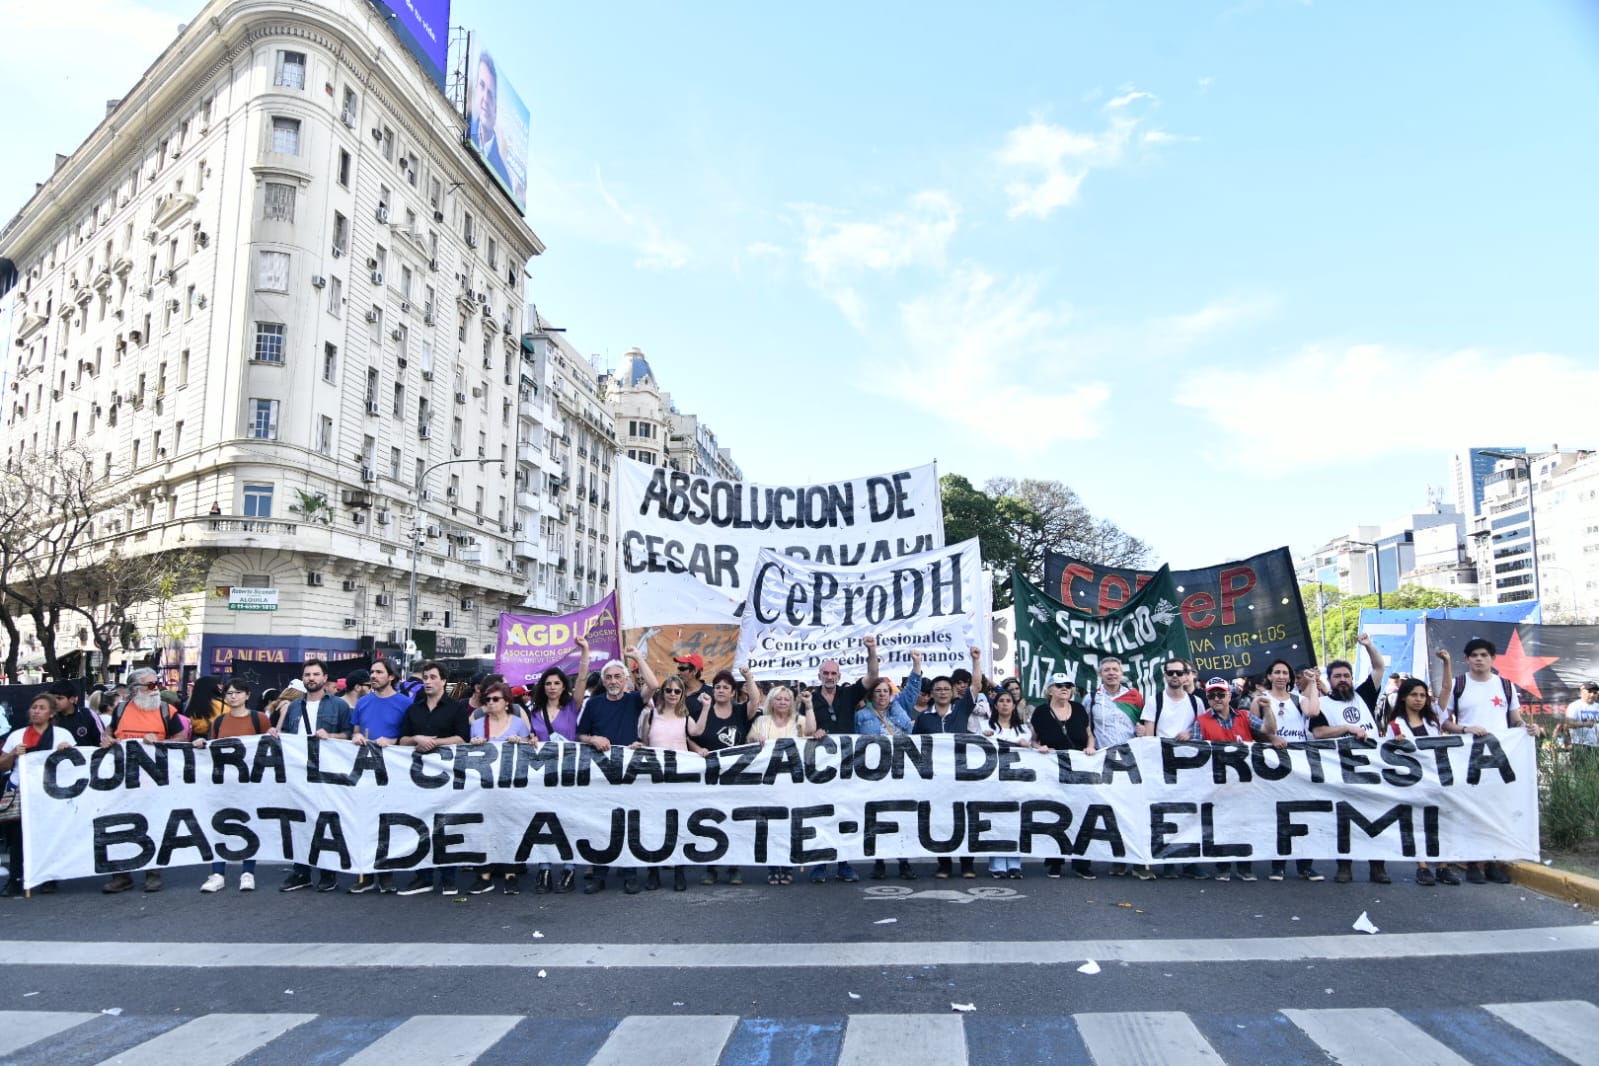 Gabriel Solano: “Esta Plaza llena viene a denunciar que en la Argentina crece la persecución a los que luchan”